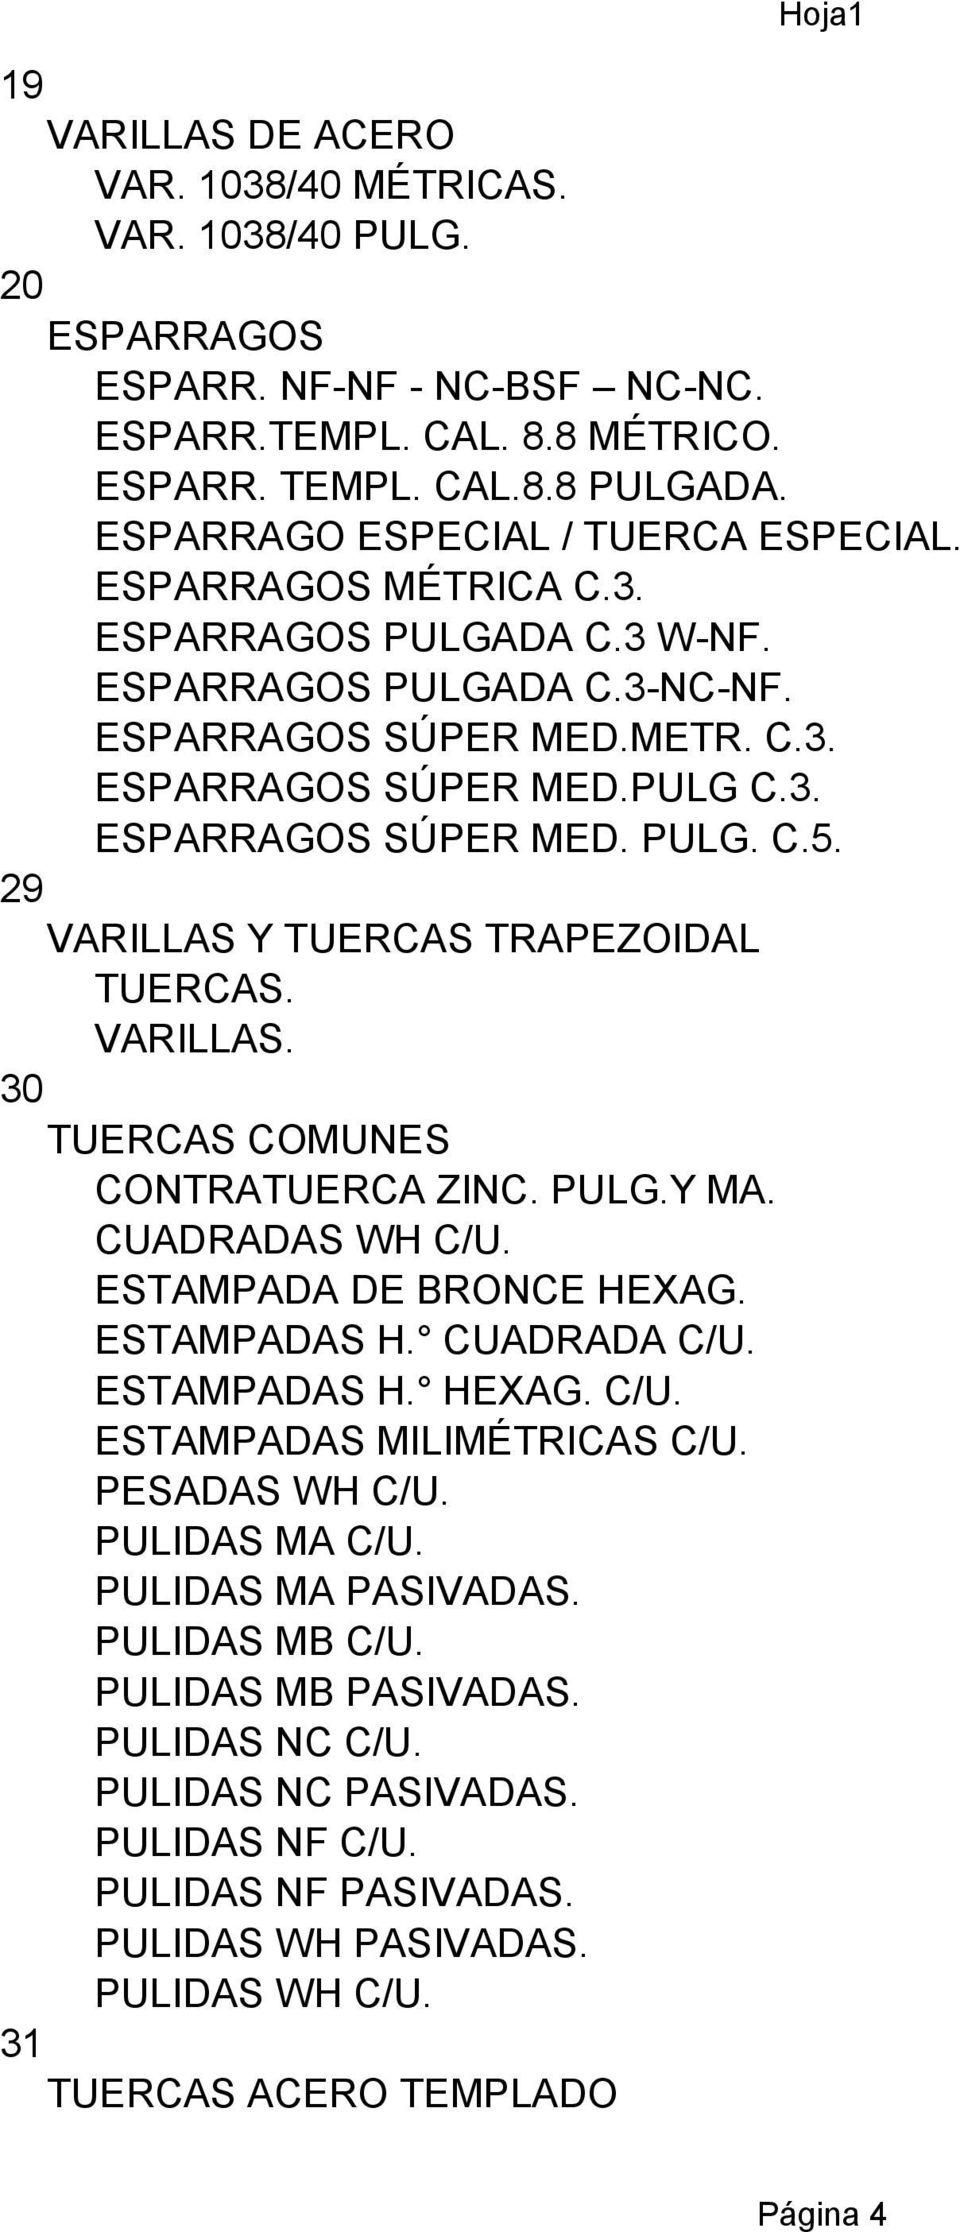 29 VARILLAS Y TUERCAS TRAPEZOIDAL TUERCAS. VARILLAS. 30 TUERCAS COMUNES CONTRATUERCA ZINC. PULG.Y MA. CUADRADAS WH C/U. ESTAMPADA DE BRONCE HEXAG. ESTAMPADAS H. CUADRADA C/U. ESTAMPADAS H. HEXAG. C/U. ESTAMPADAS MILIMÉTRICAS C/U.